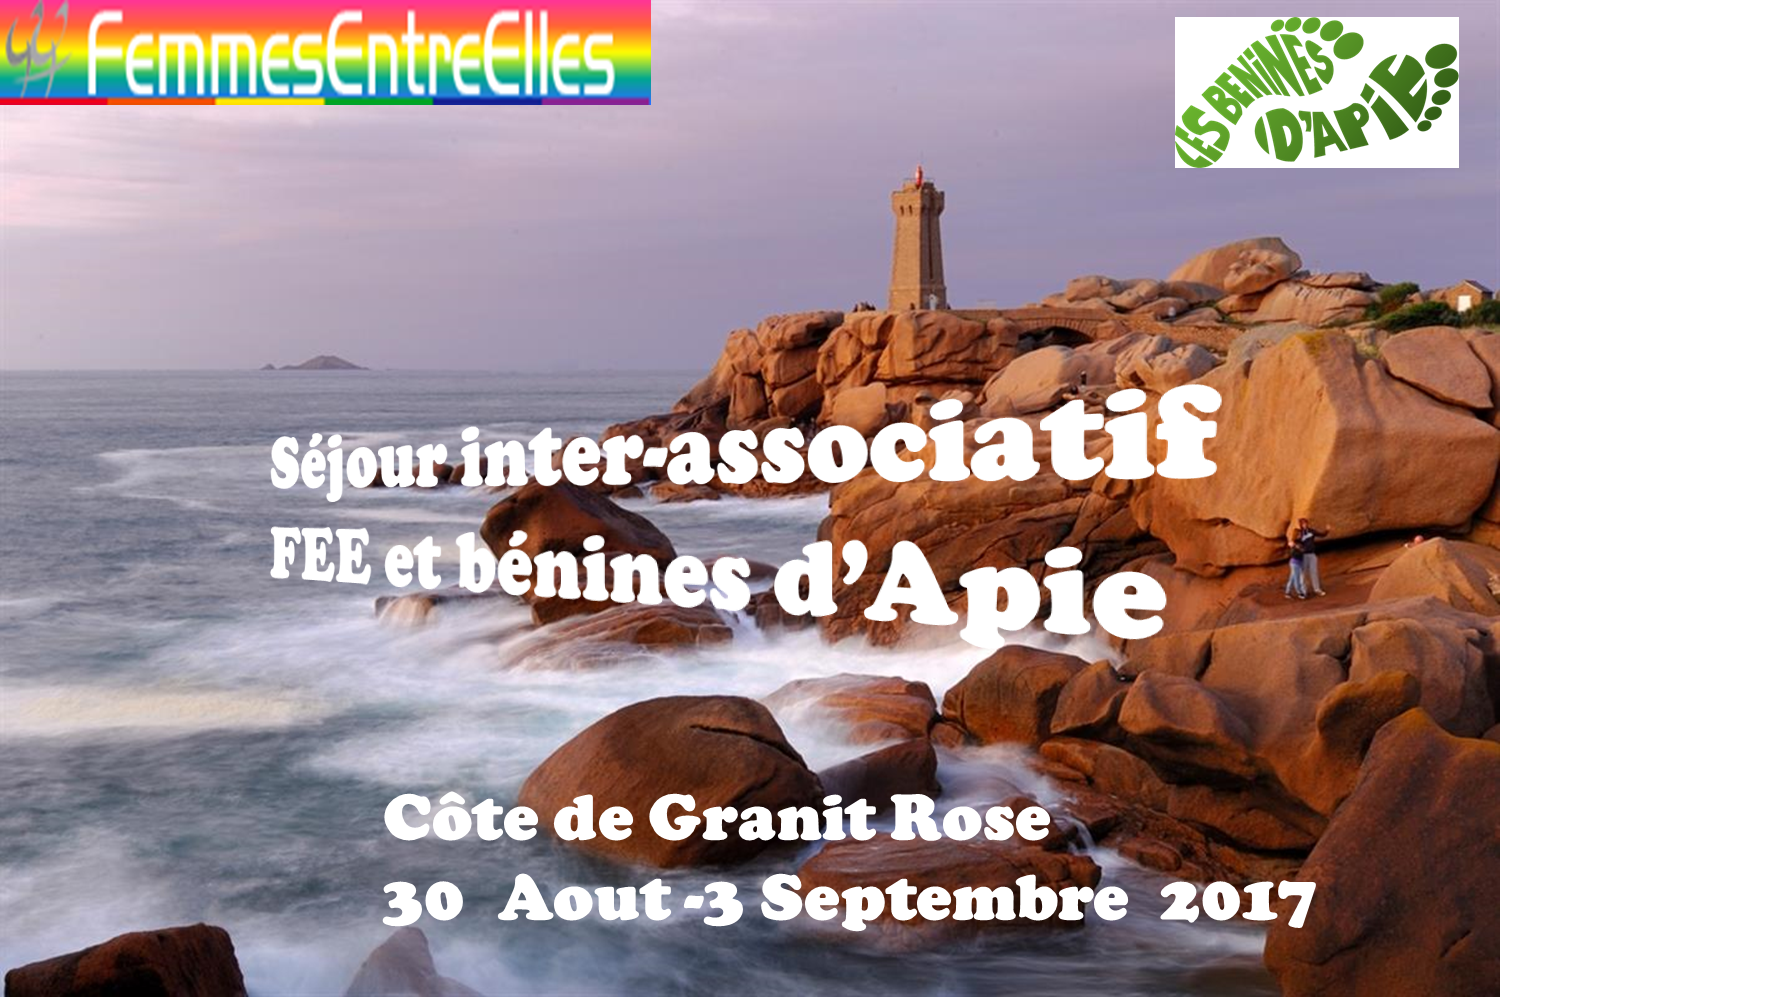 Séjour  inter-associatif des FEEs et Bénines d’Apie sur la côte de Granit Rose du 30 Aout au 3 Septembre 2017